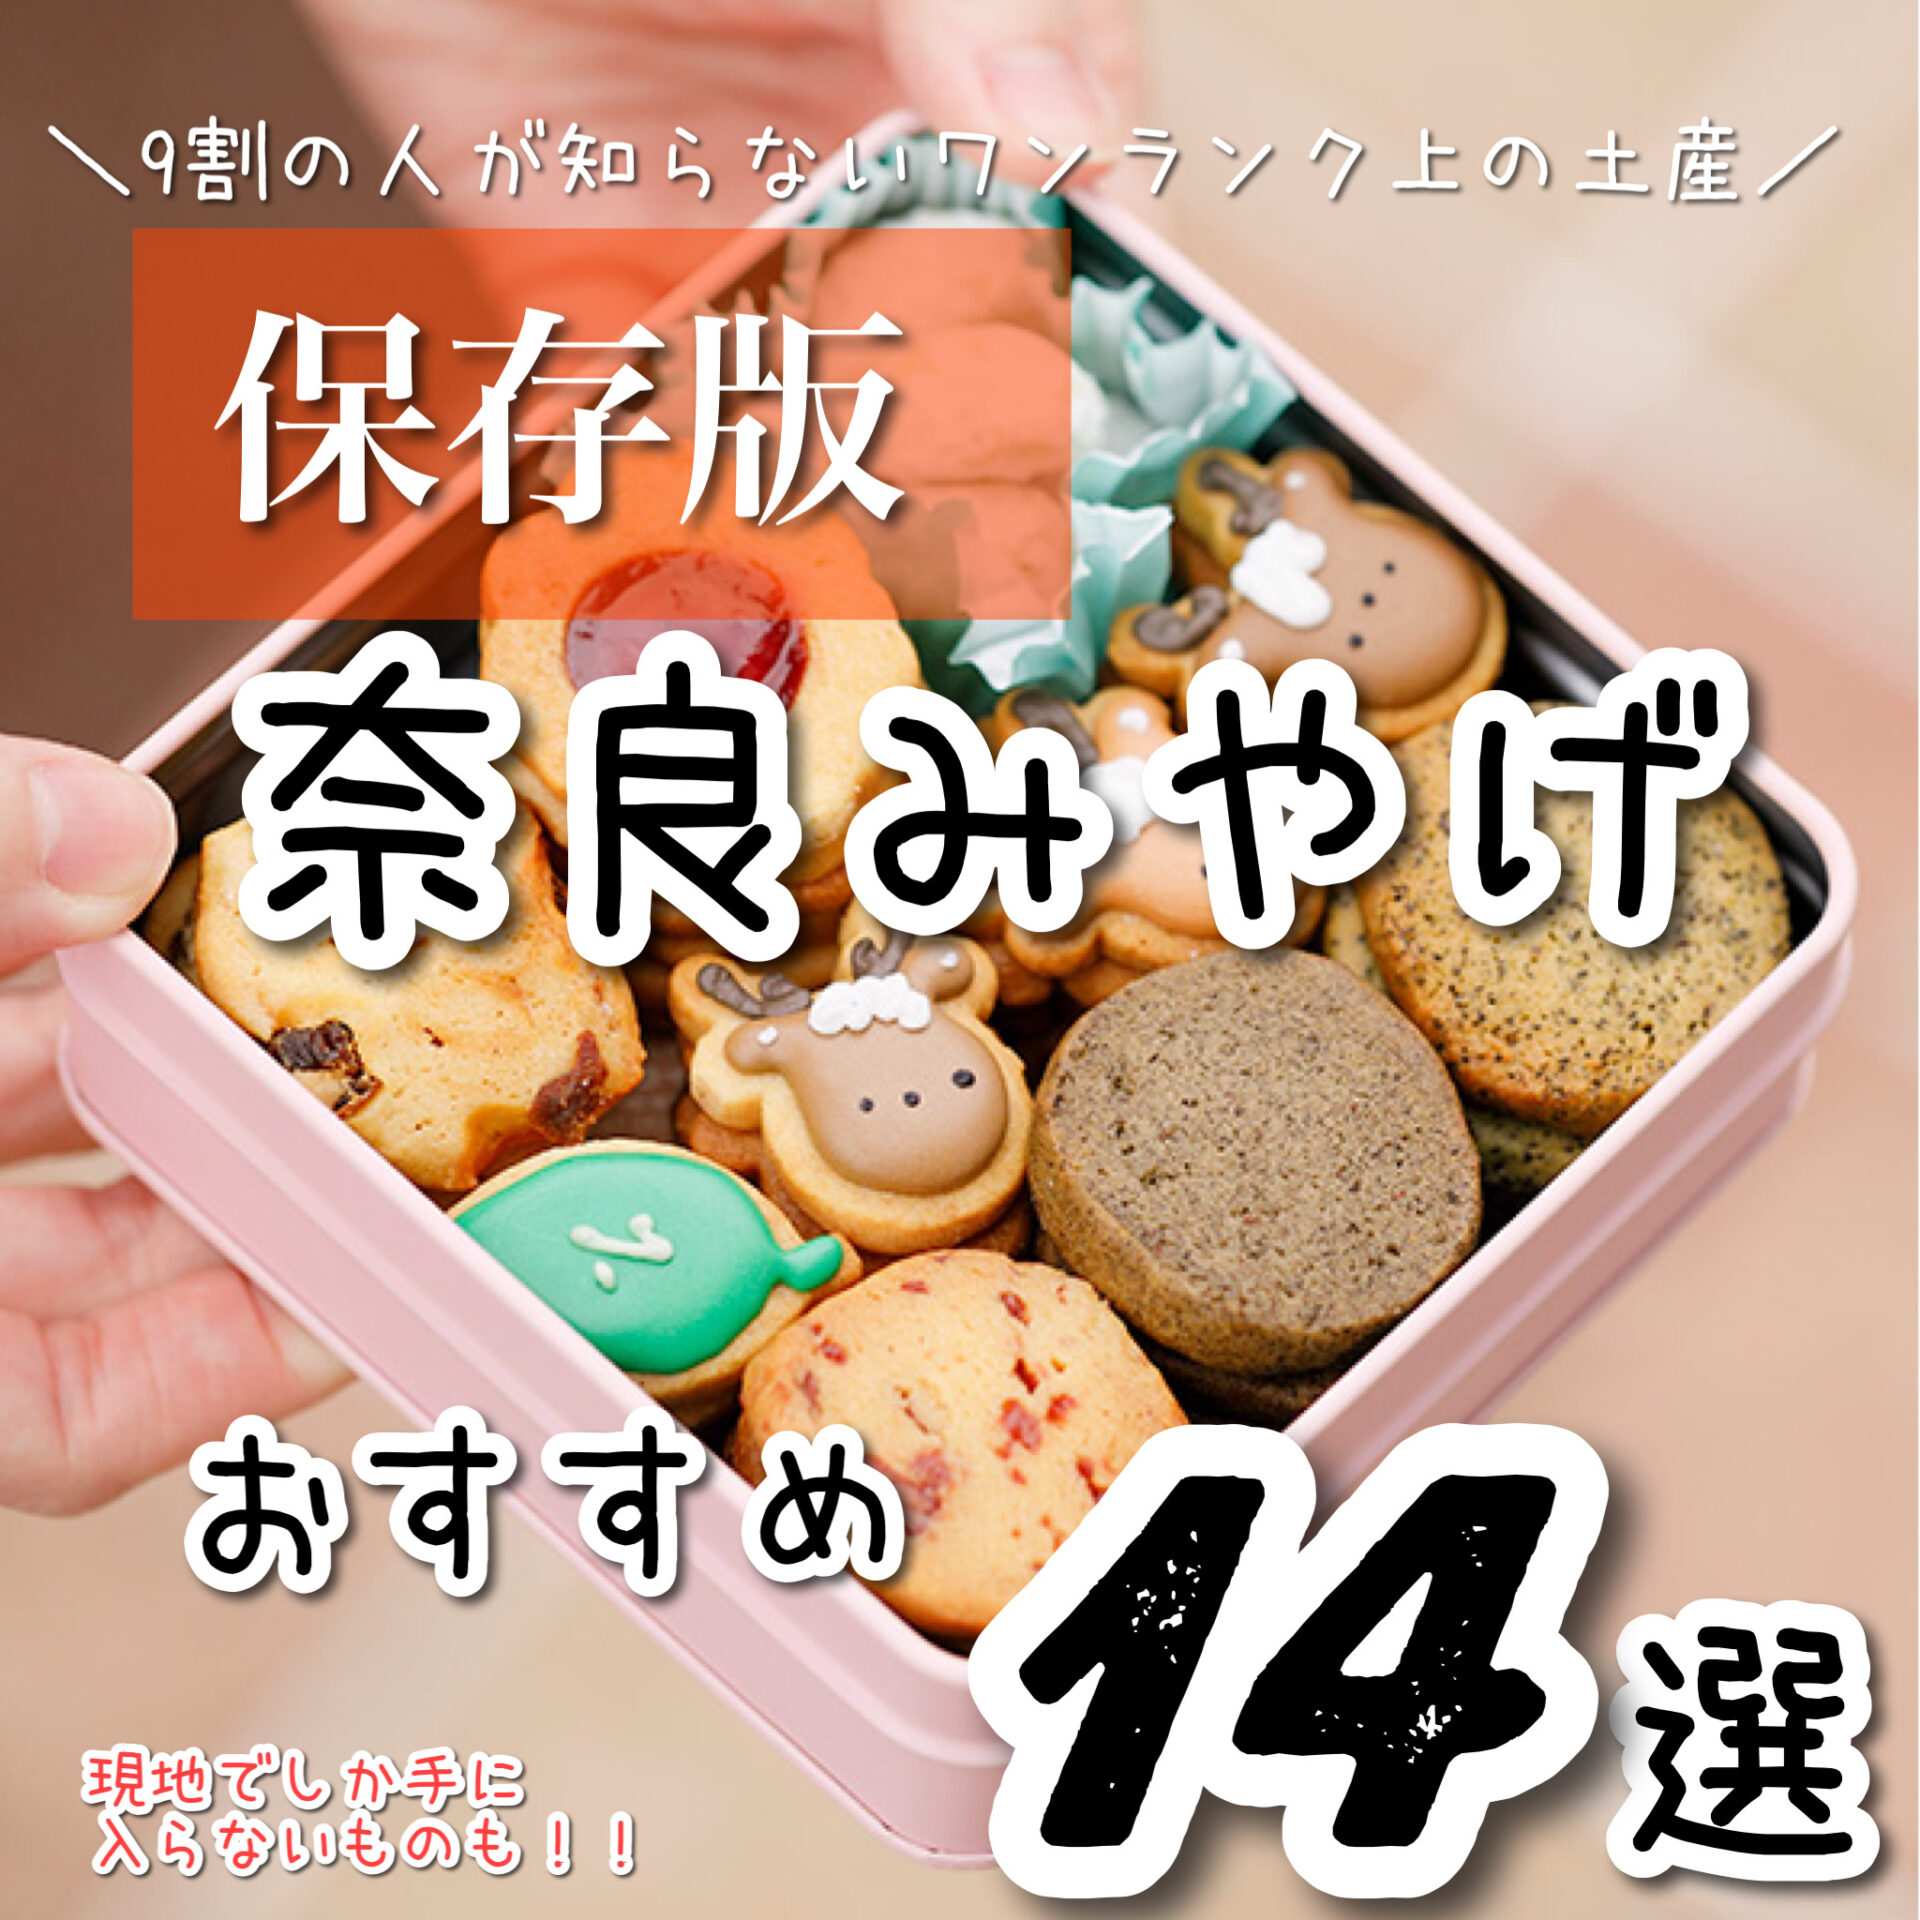 165円 Rakuten 〈奈良みやげ〉奈良限定 まほろば6Pマグネット